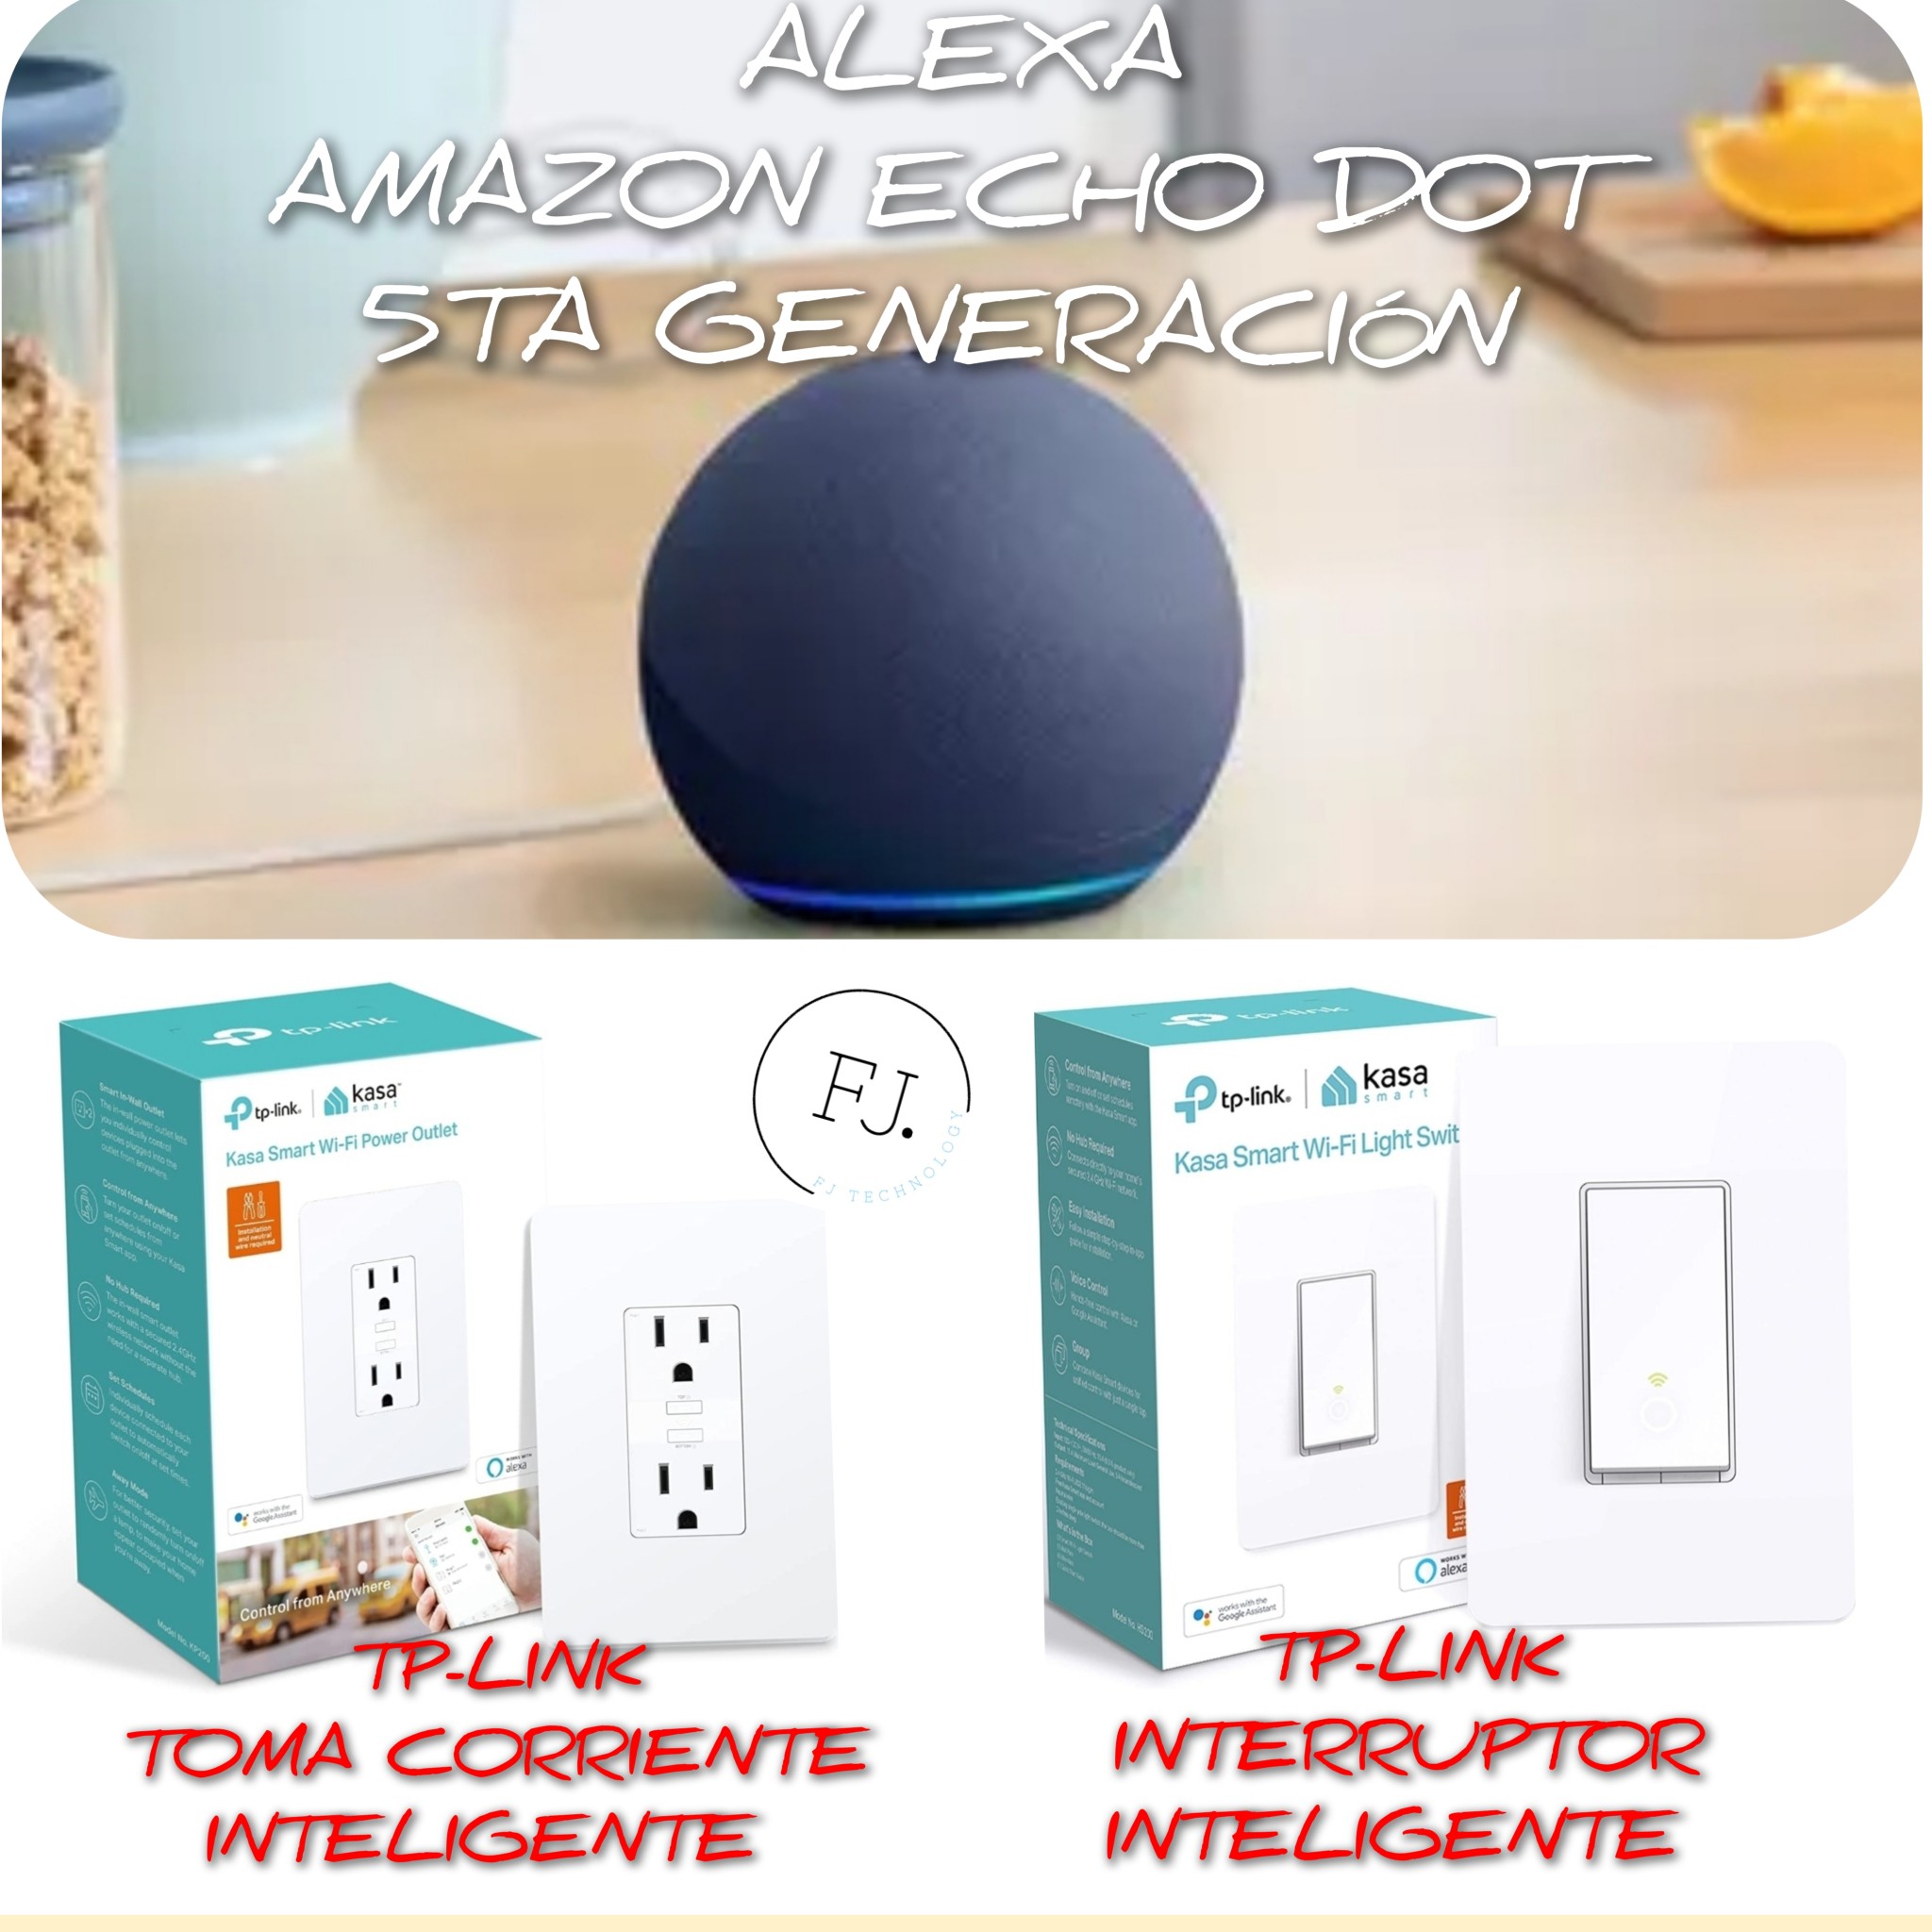 accesorios para electronica - ESPECIAL DE COMBO ALEXA 5TA GENERACIÓN, TOMA CORRIENTE E INTERRUPTOR INTELIGENTE